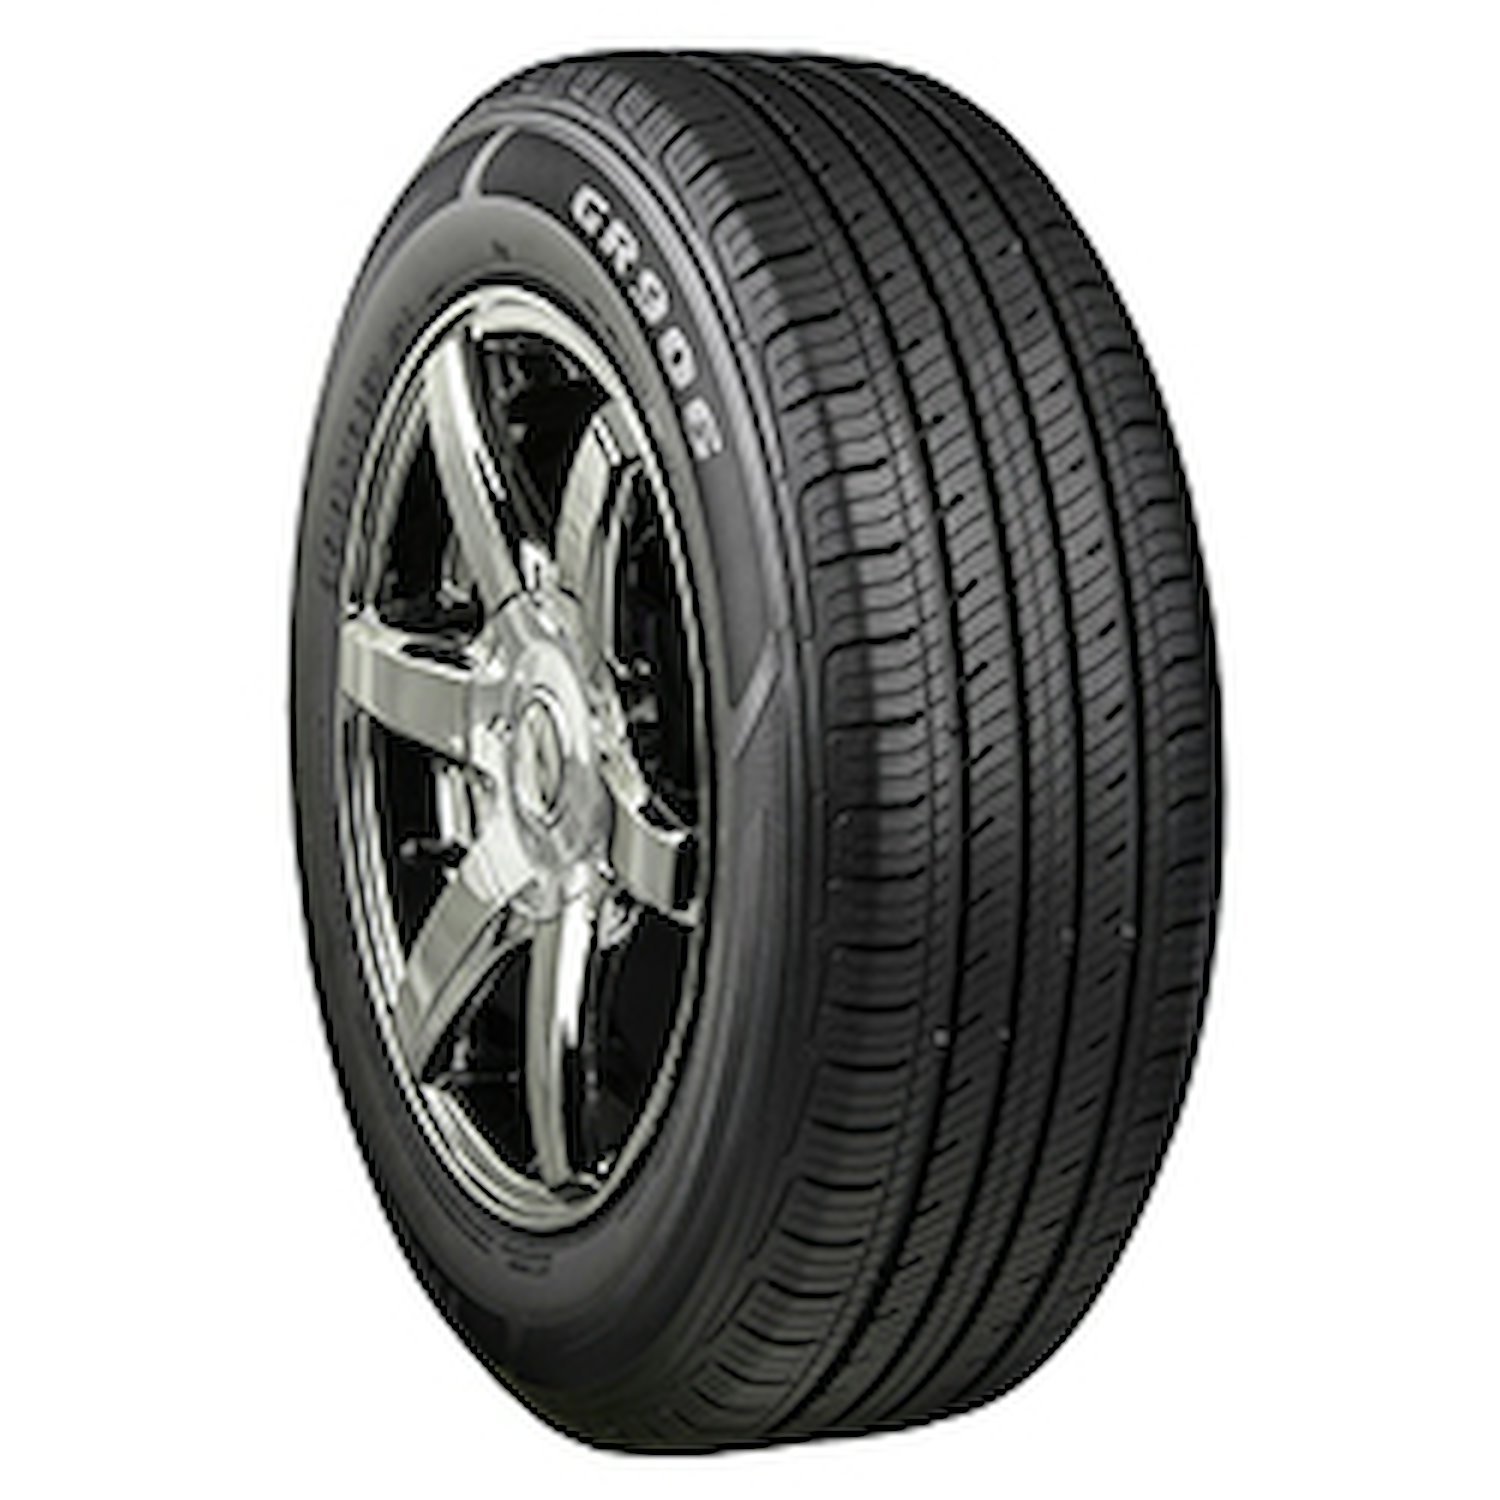 GR906 Tire, 205/50R16 87V